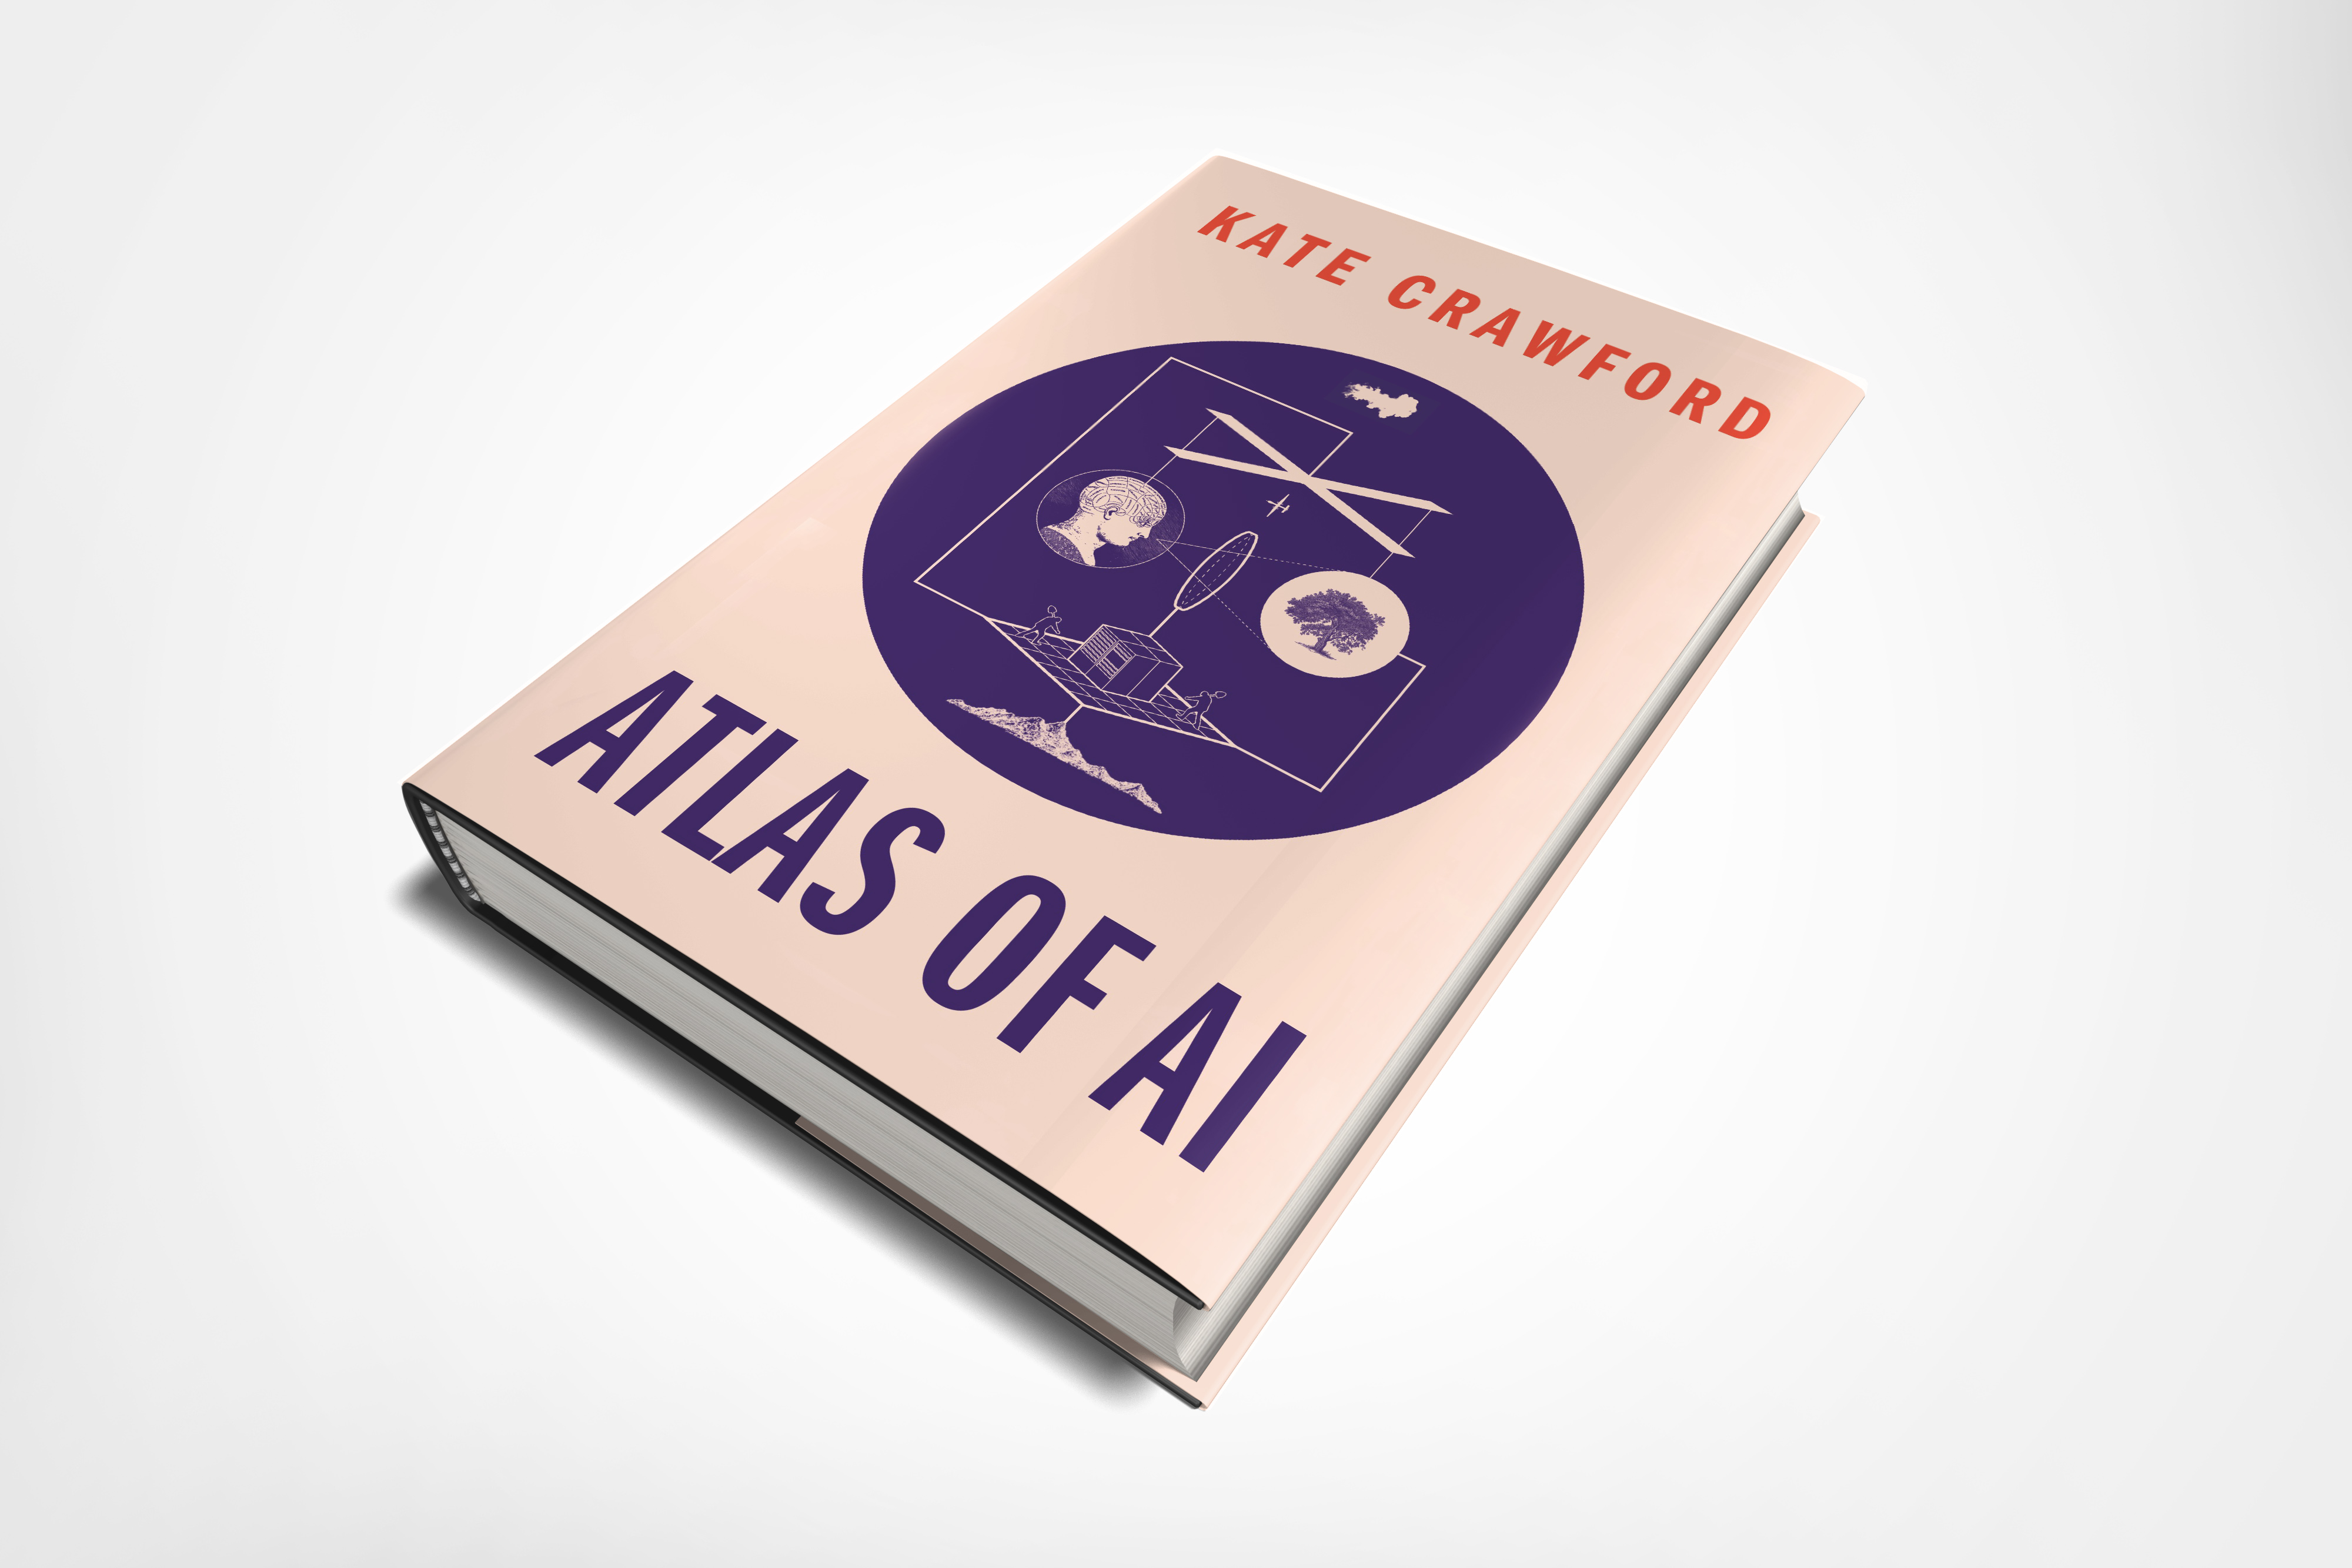 atlas of ai book review